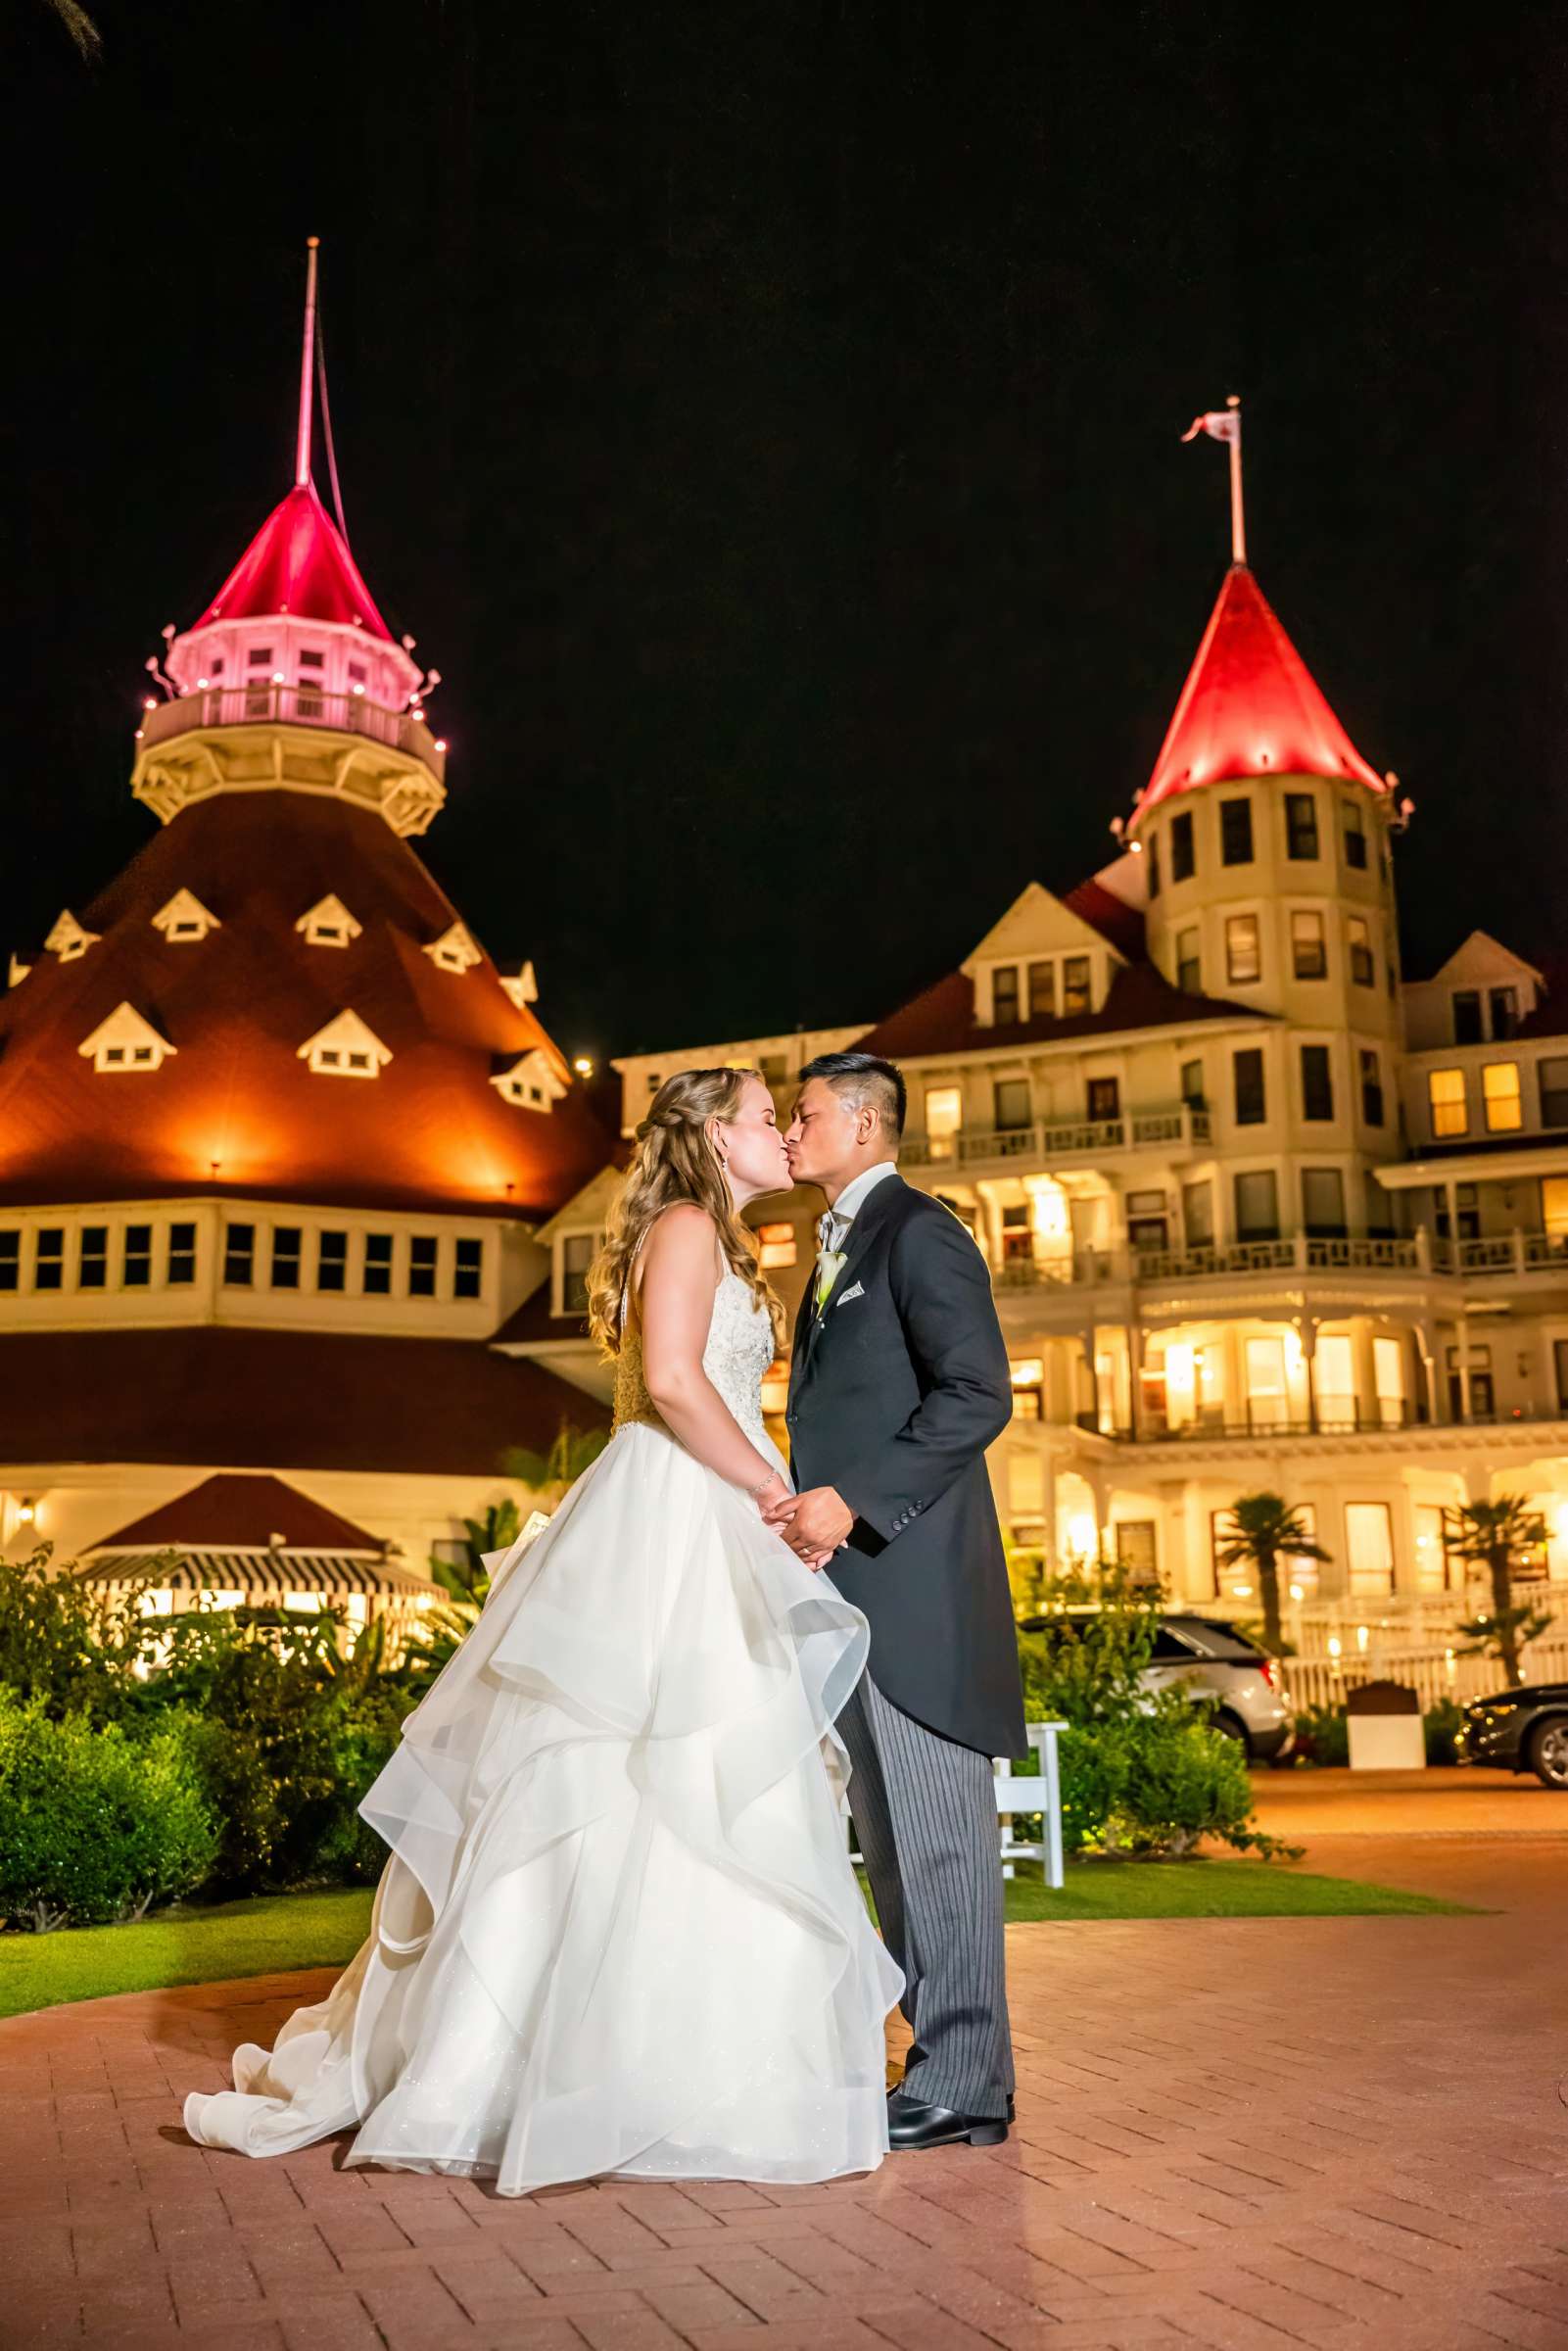 Hotel Del Coronado Wedding, Megan and John Alec Wedding Photo #710811 by True Photography